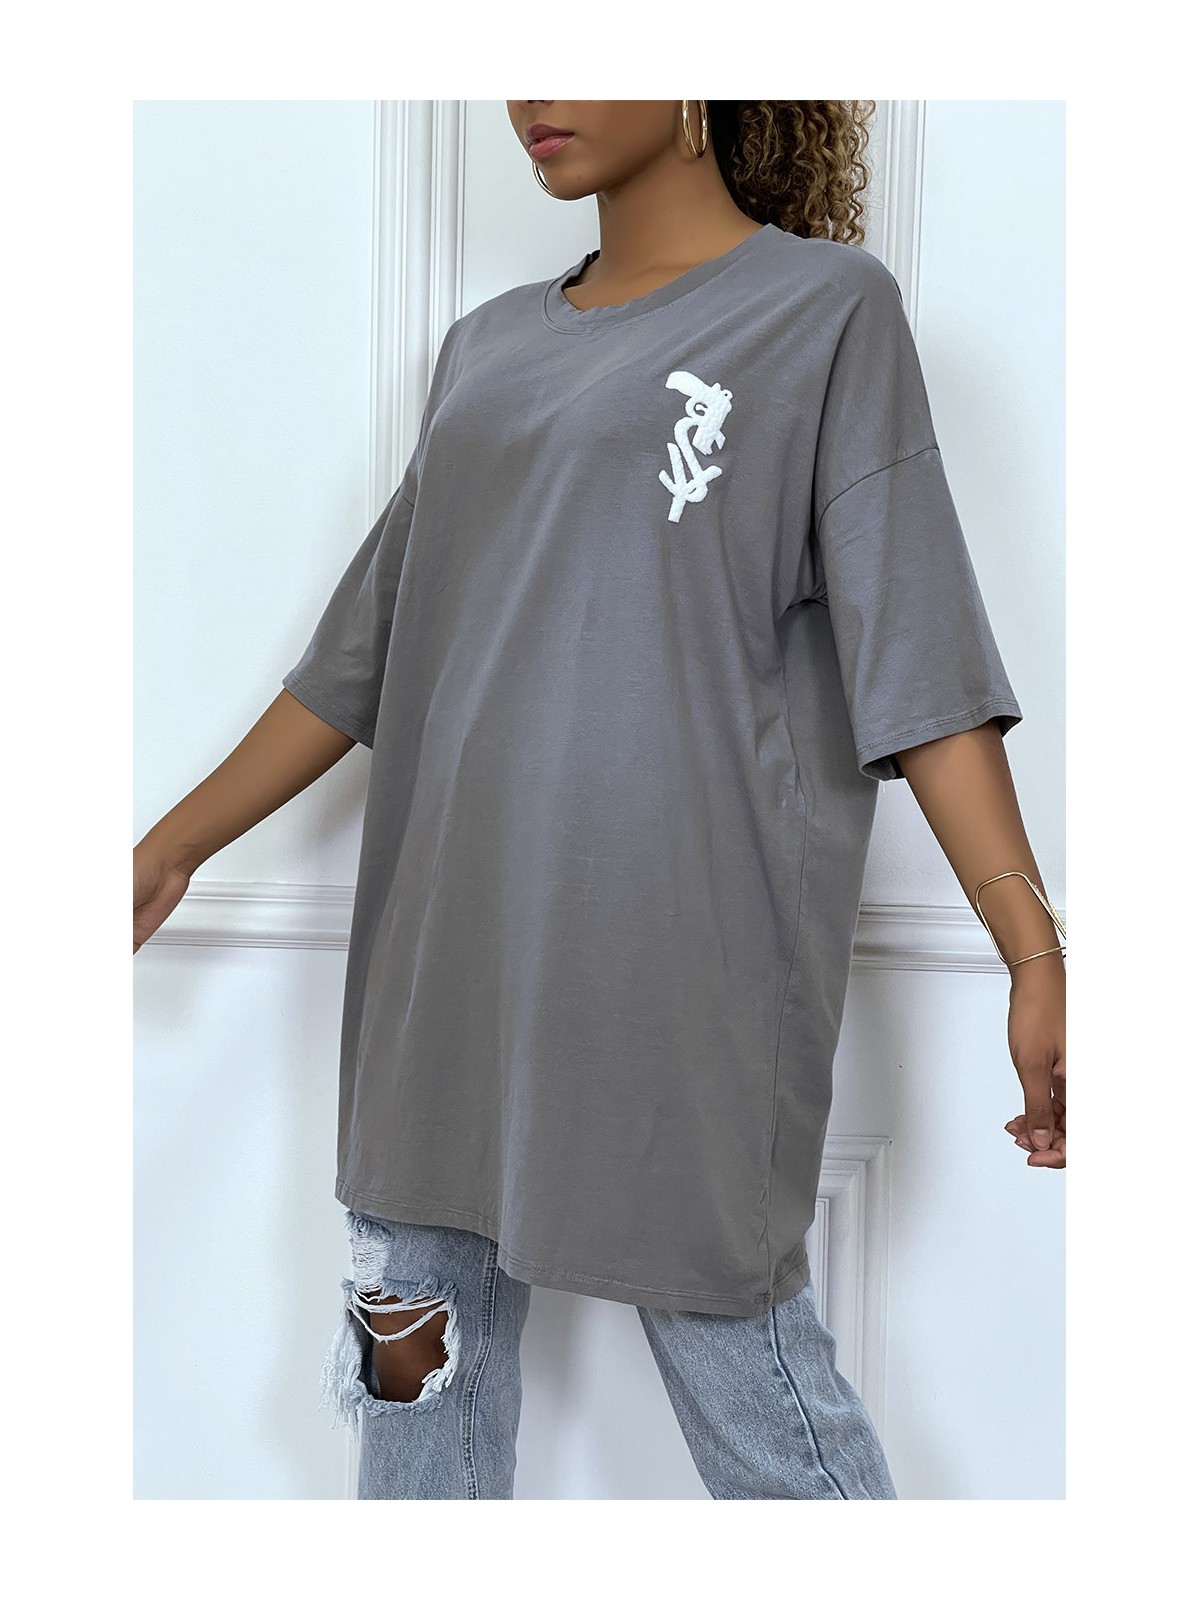 Tee-shirt oversize anthracite tendance avec dessin en coton - 2